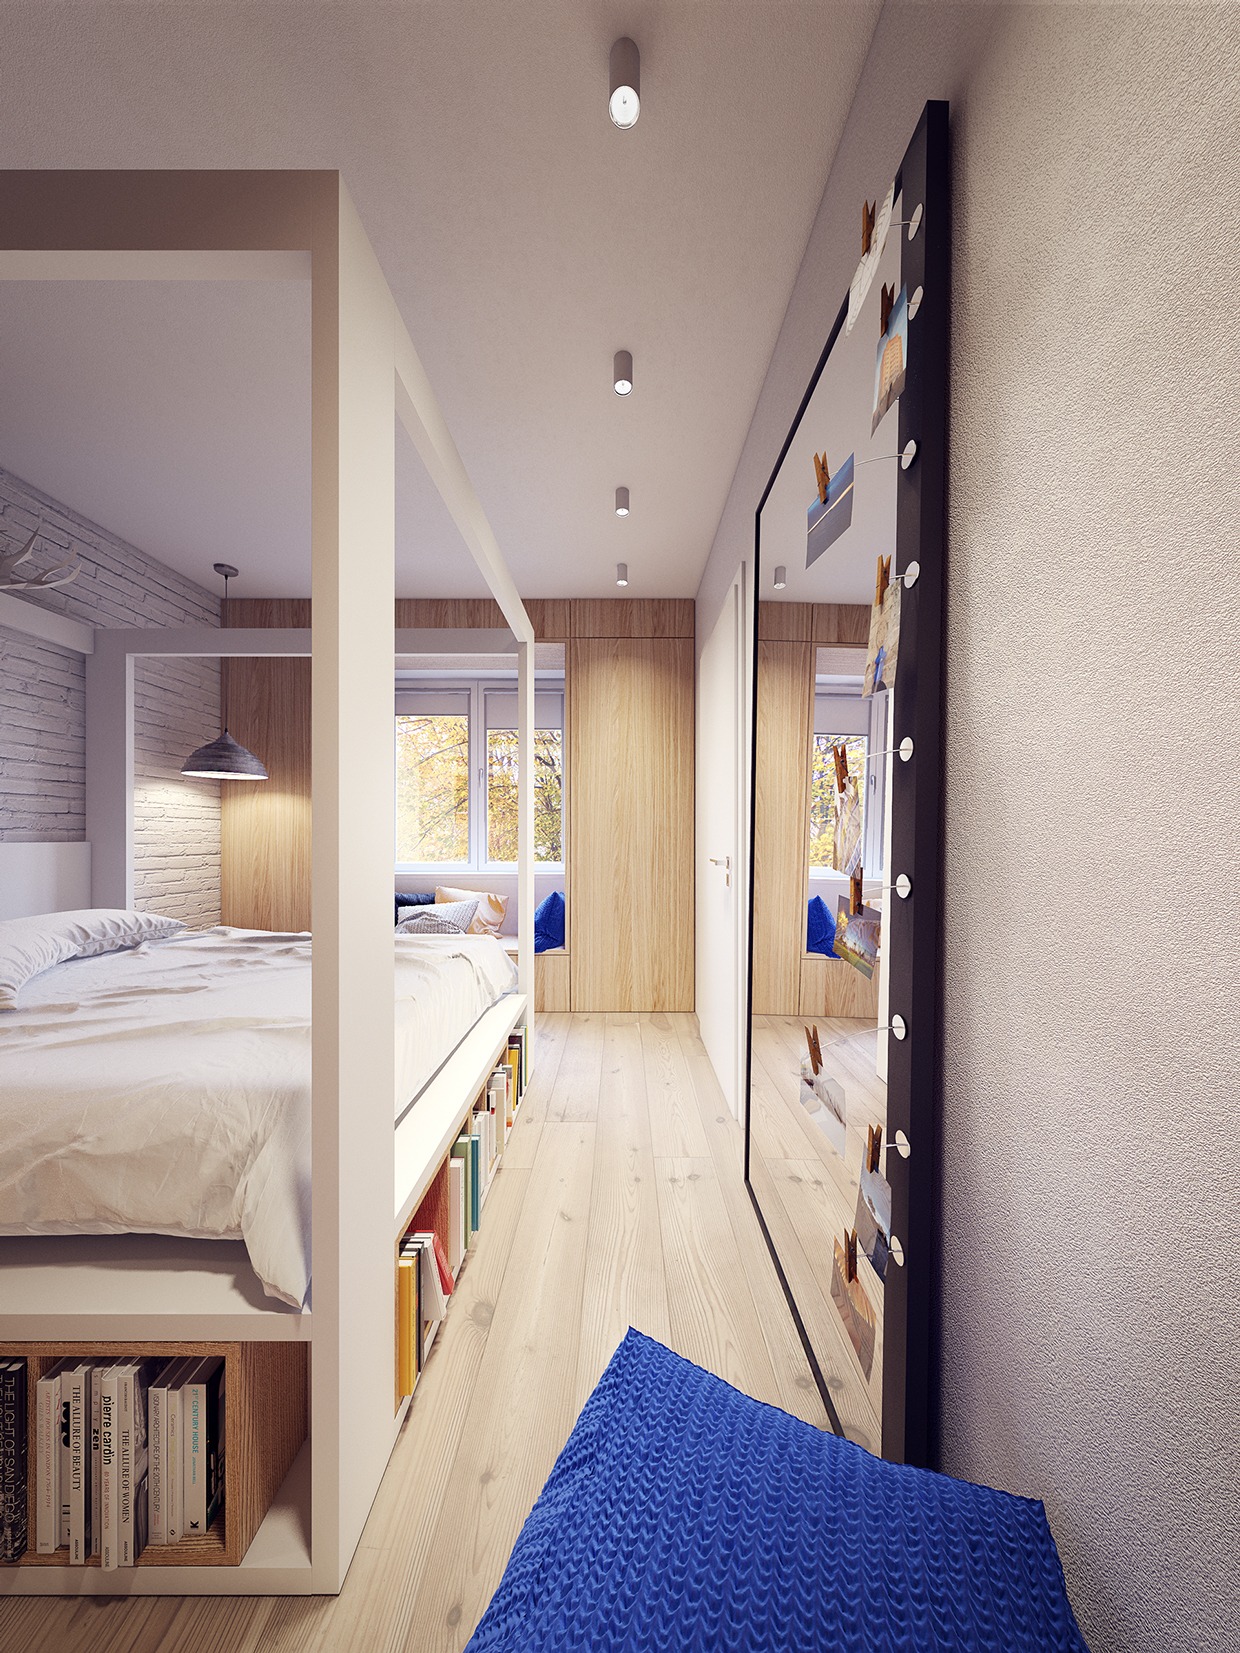 Wedo thiết kế nội thất phòng ngủ đẹp lấy cảm hứng từ xu hướng những năm 60